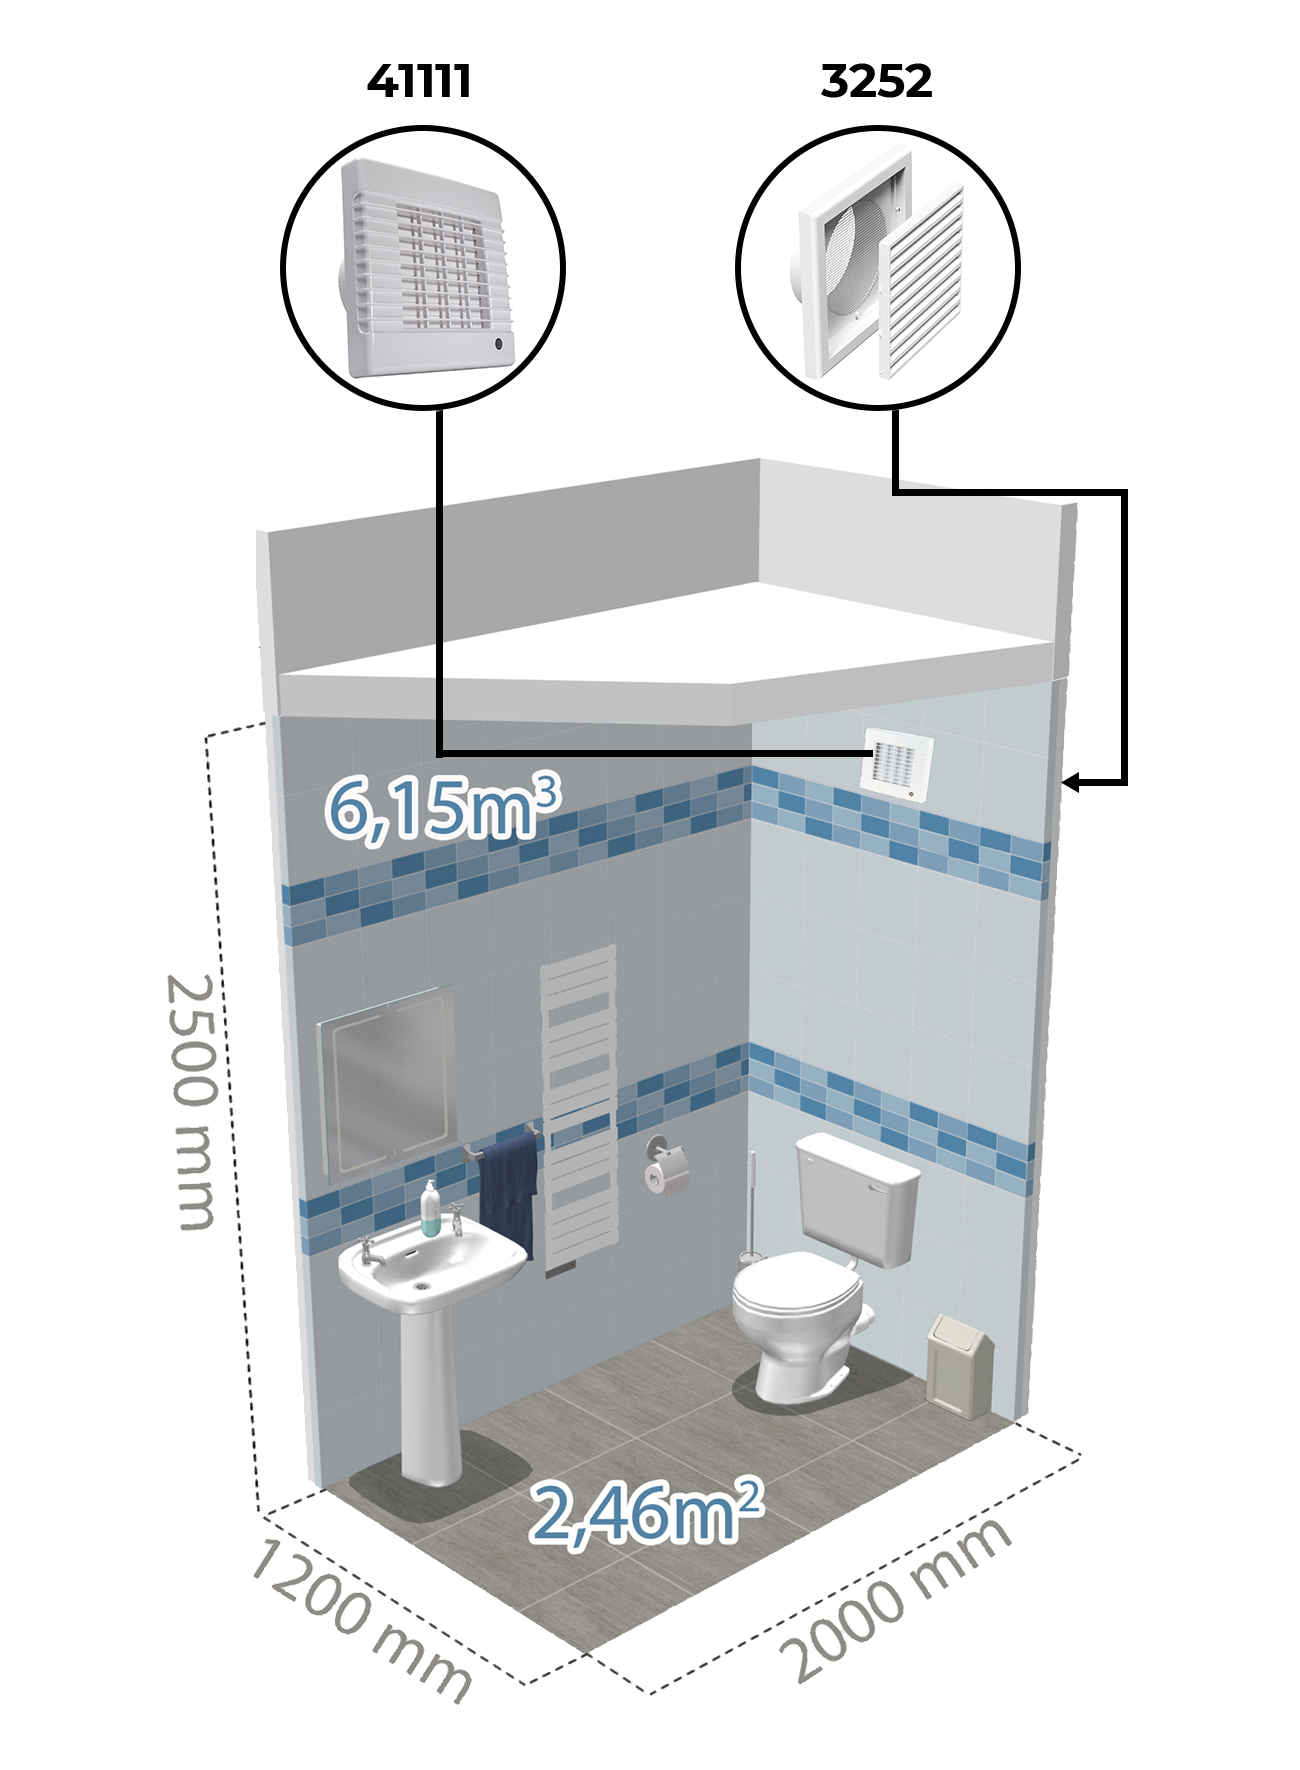 Példa légtechnikai berendezés felhasználására WC-ben Dalap LV Fürdőszoba ventilátorral.